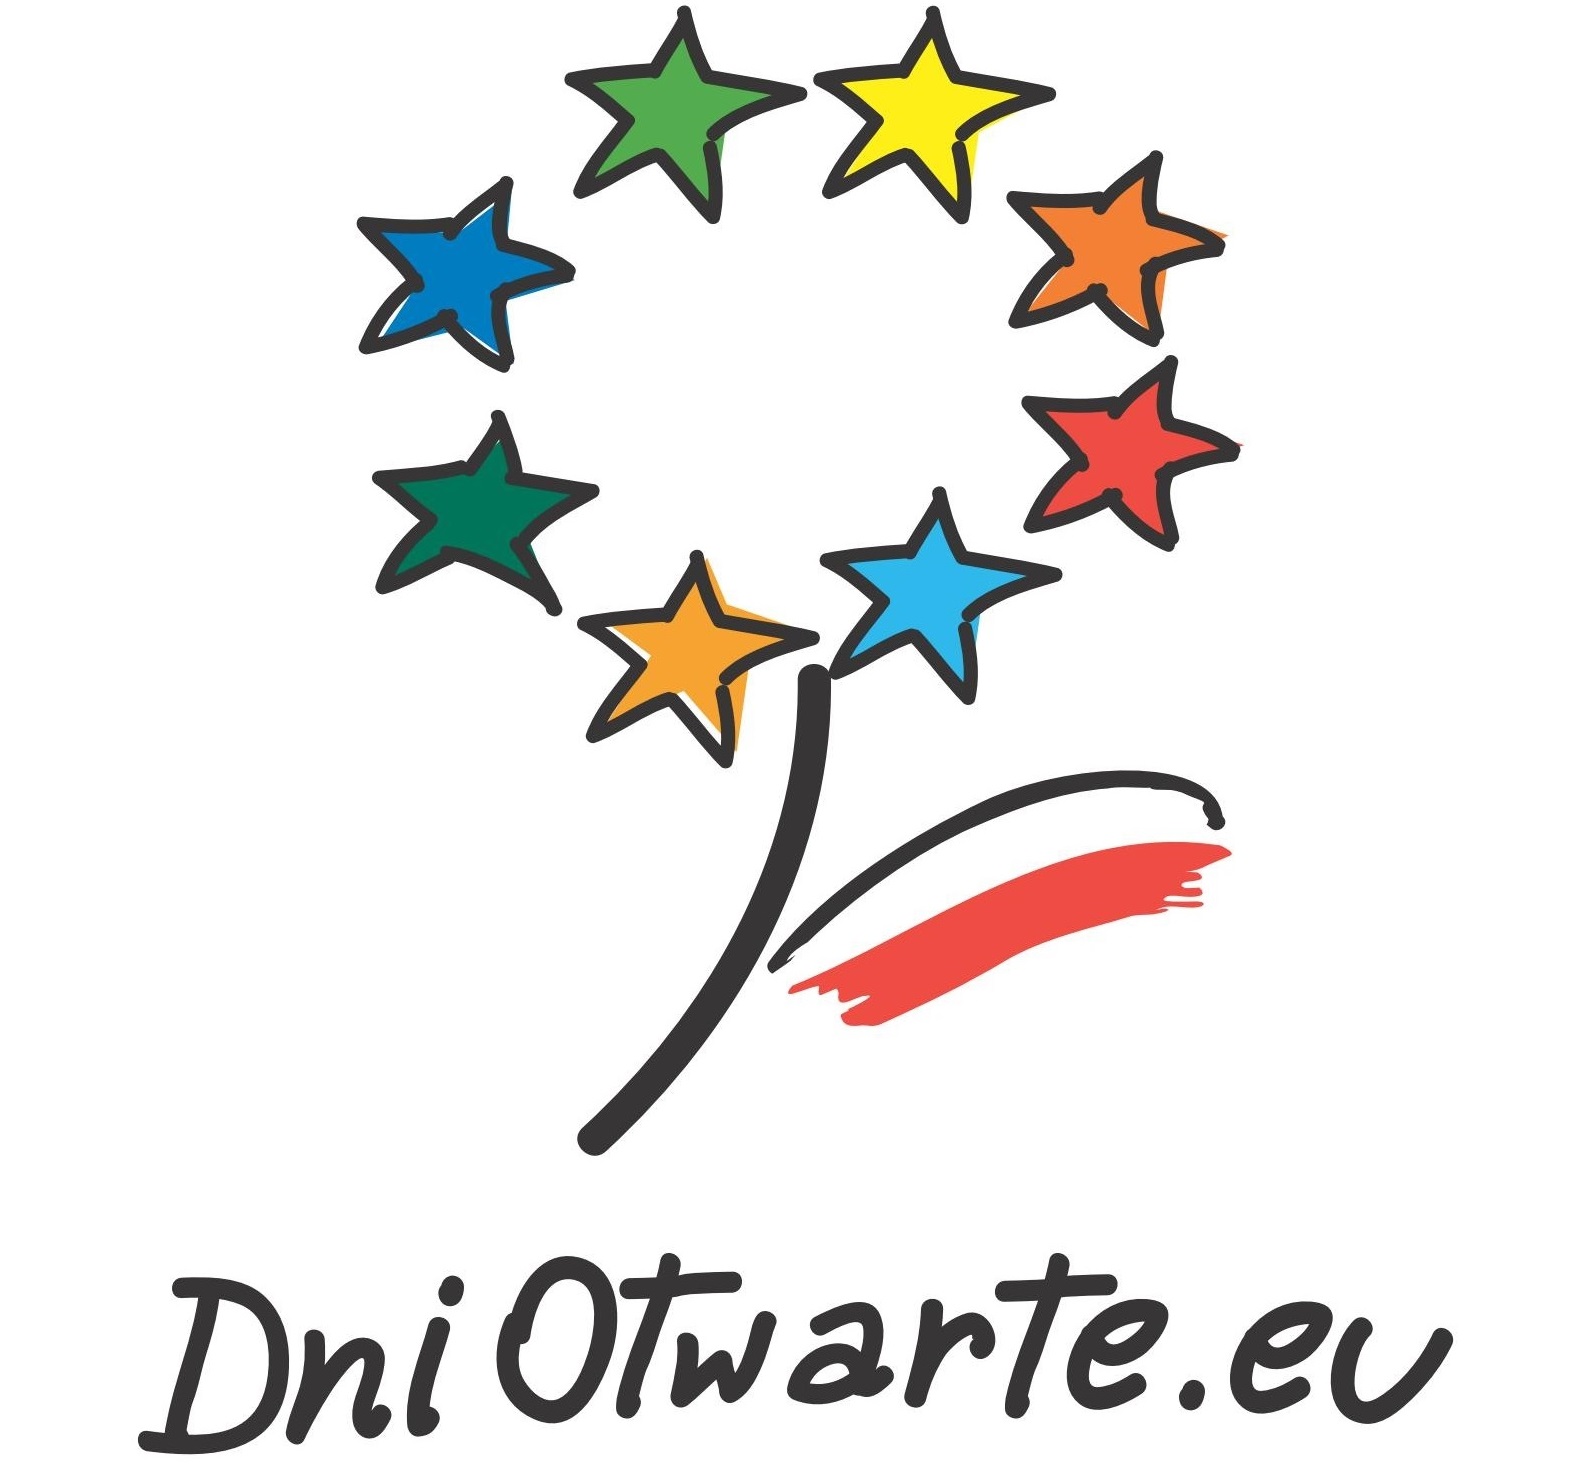 Logo programu: dni otwarte funduszy europejskich - kwiat złozony z kolorowych gwiazdek